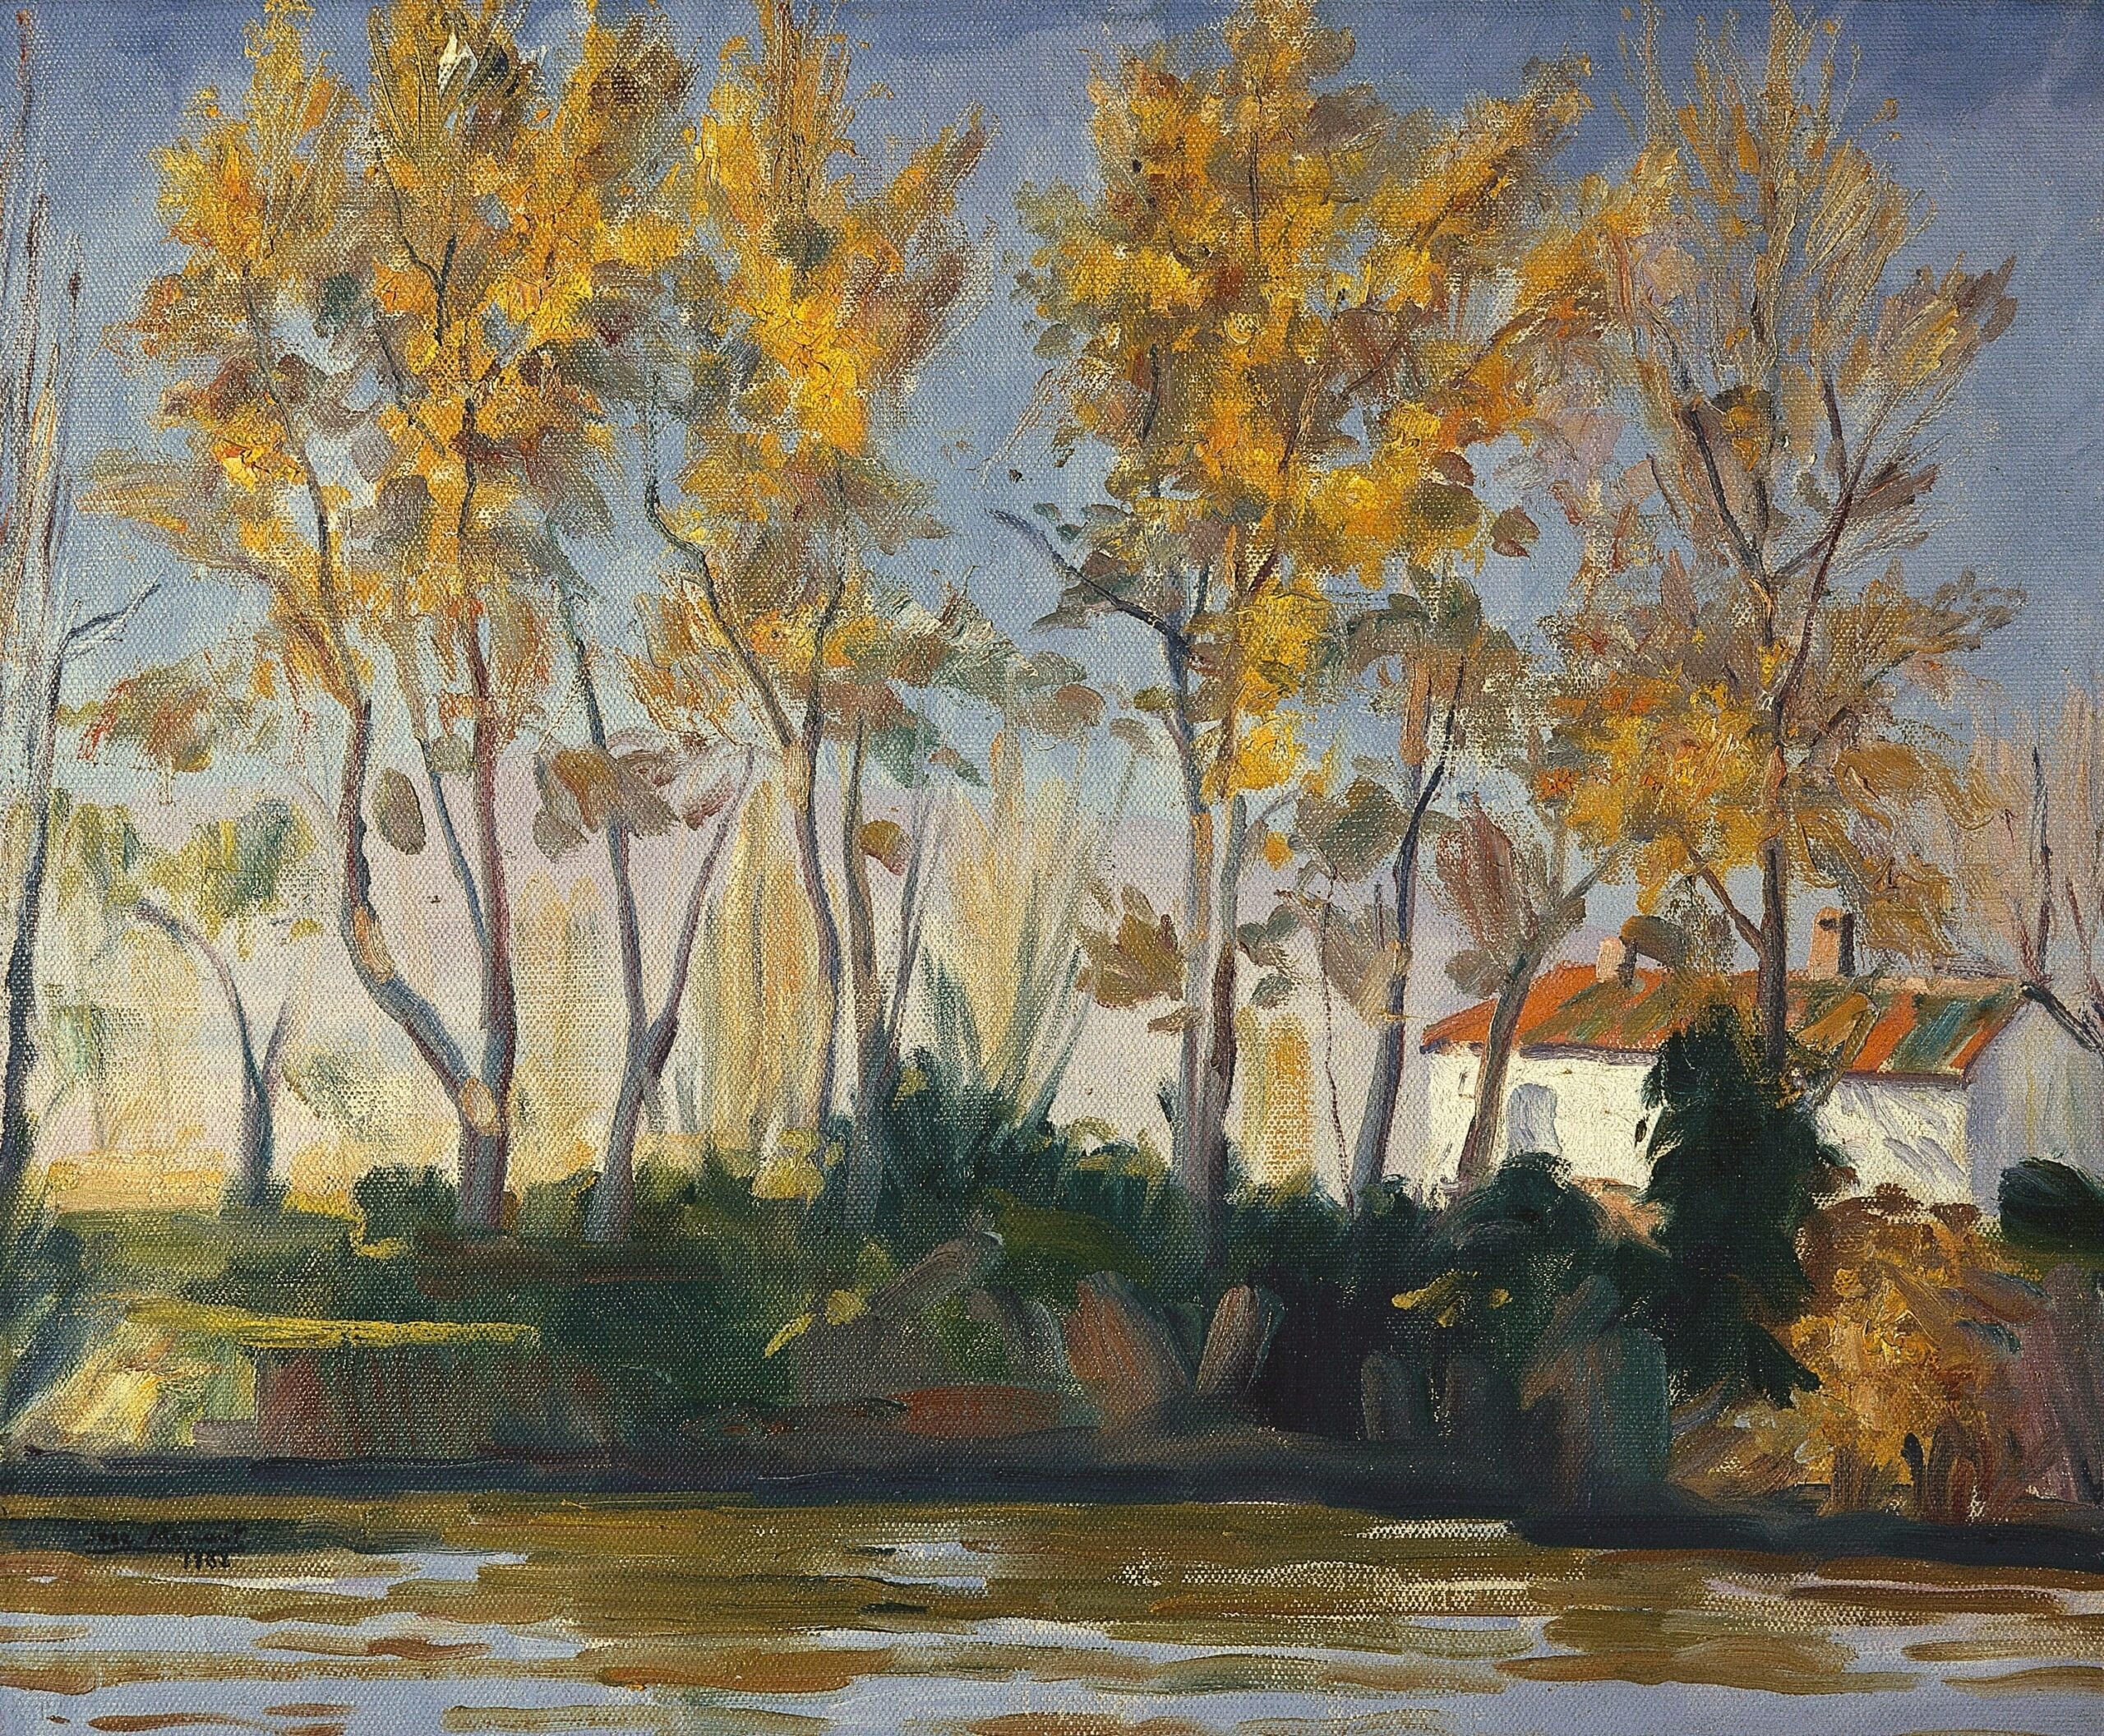 Pintura de José Manaut titulada Otoño junto al río, 1962. Óleo sobre lienzo.